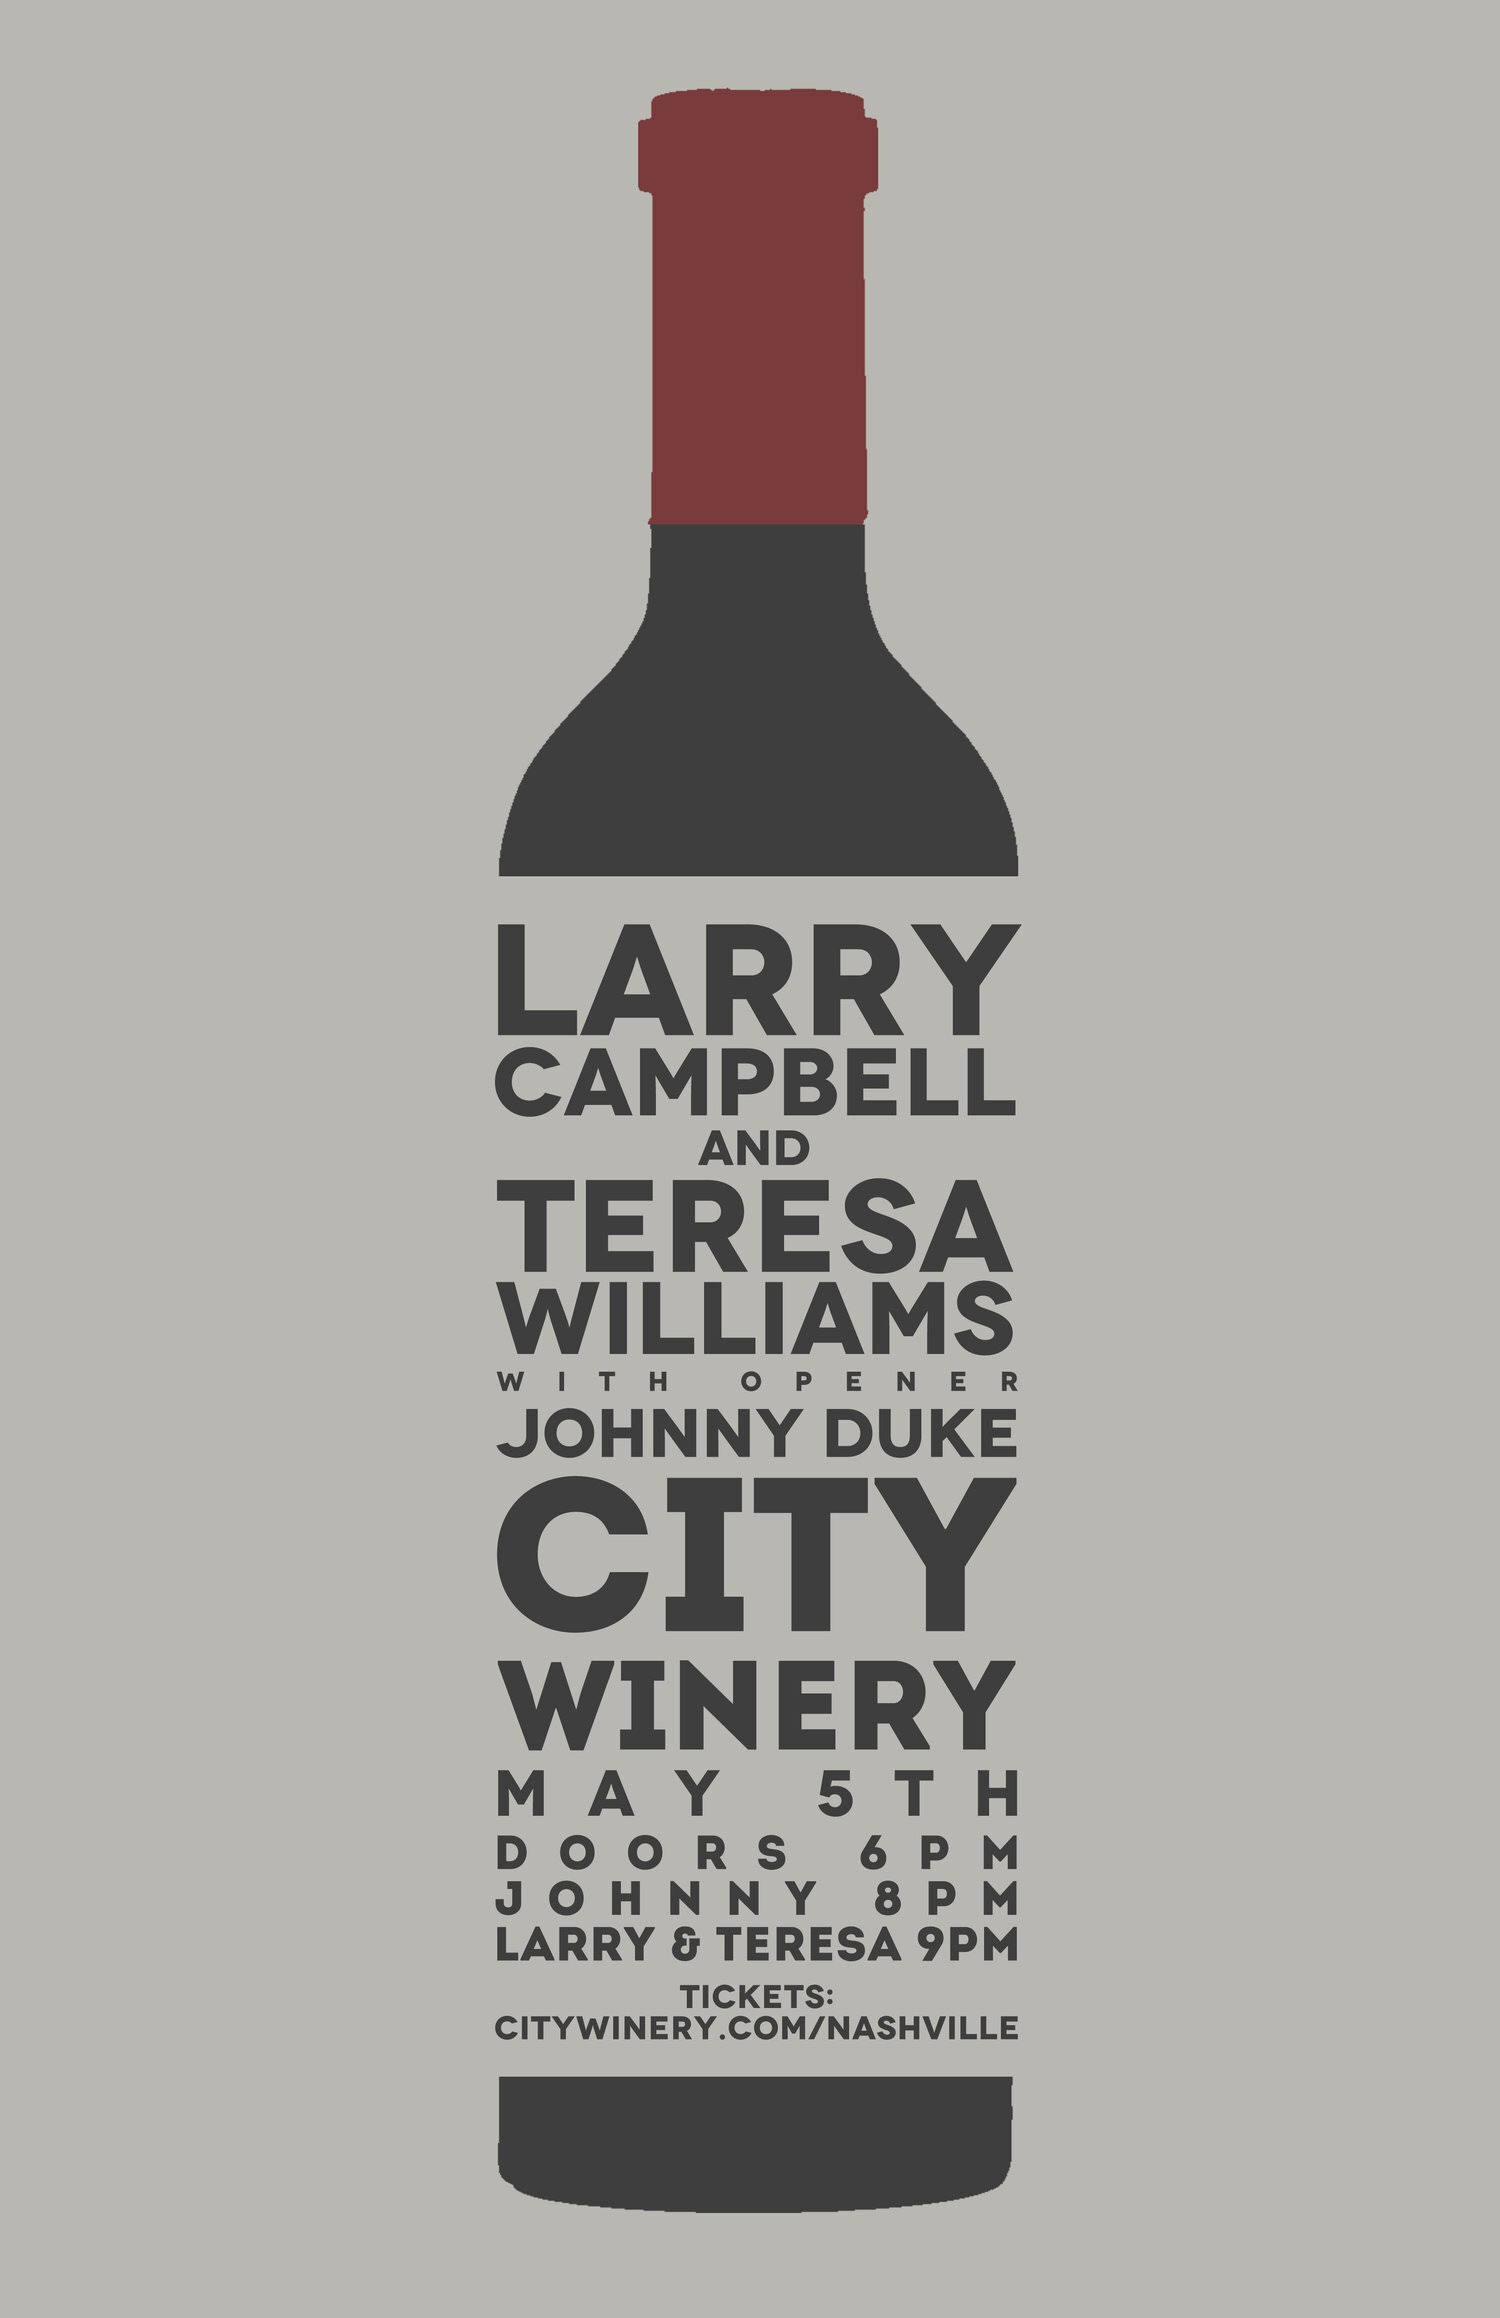 belhum-larry-campbell-teresa-williams-city-winery-johnny-duke-poster.jpg